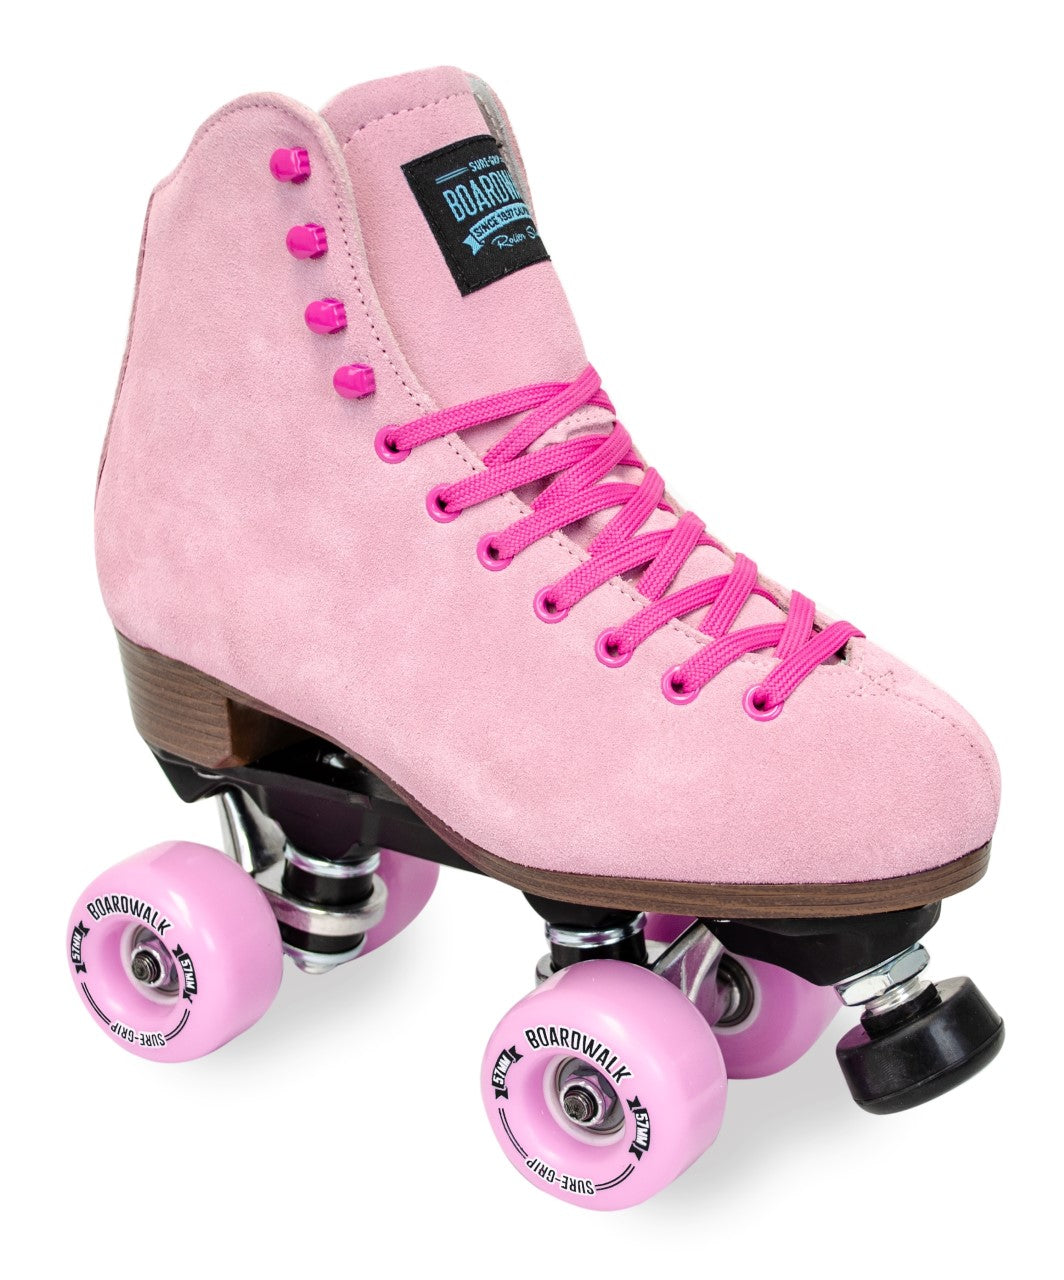 Sure Grip Boardwalk Suede Roller Skates, Roller Skates Bakersfield, Roller Rink Skates Bakersfield, Roller Skates For Dancing, Skate Shops Near Me, Suede Roller Skates, Pink Roller Skates